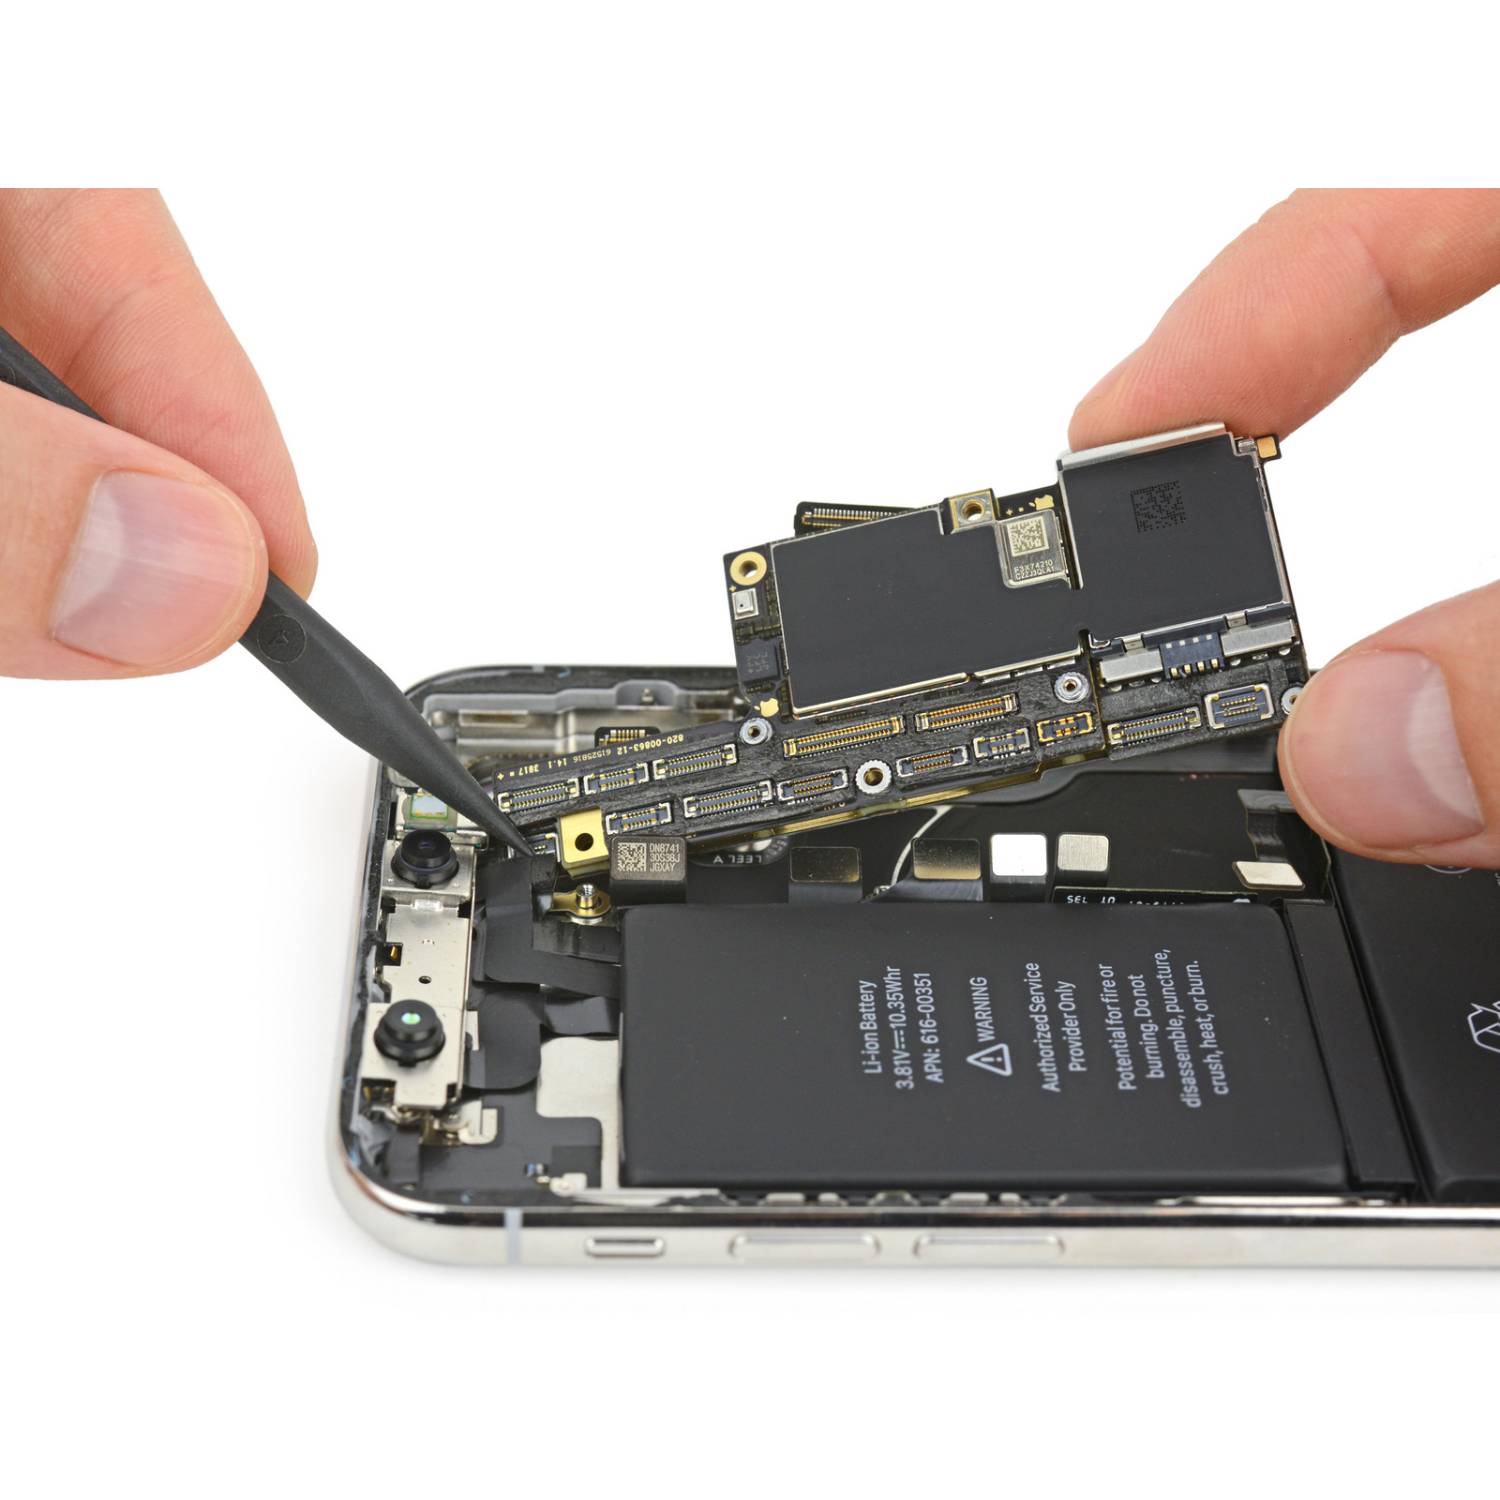 iPhone X Repair